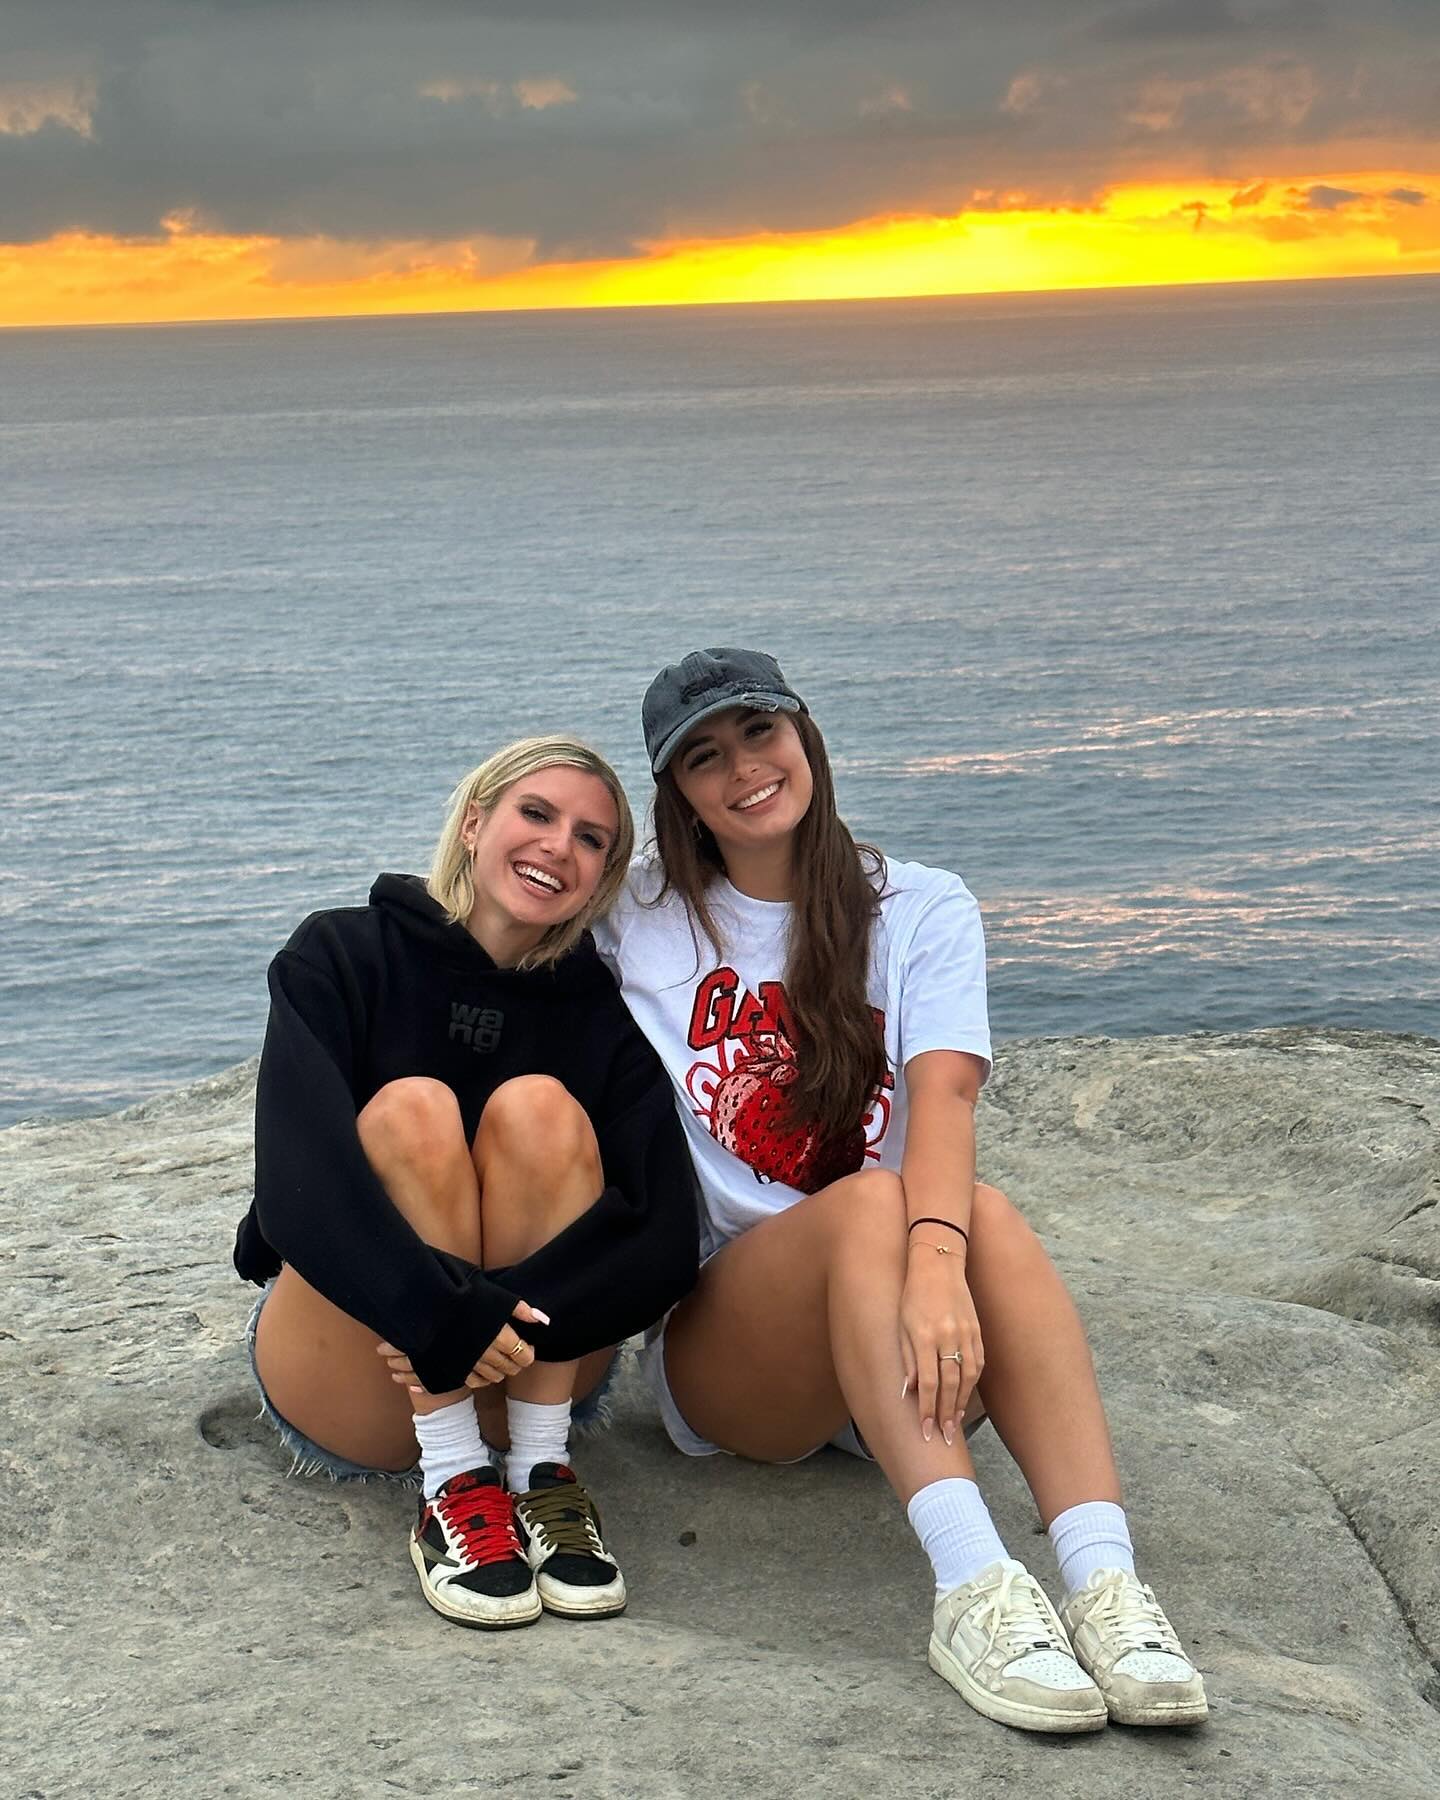 Chloe war mit ihrer besten Freundin Millie in Australien